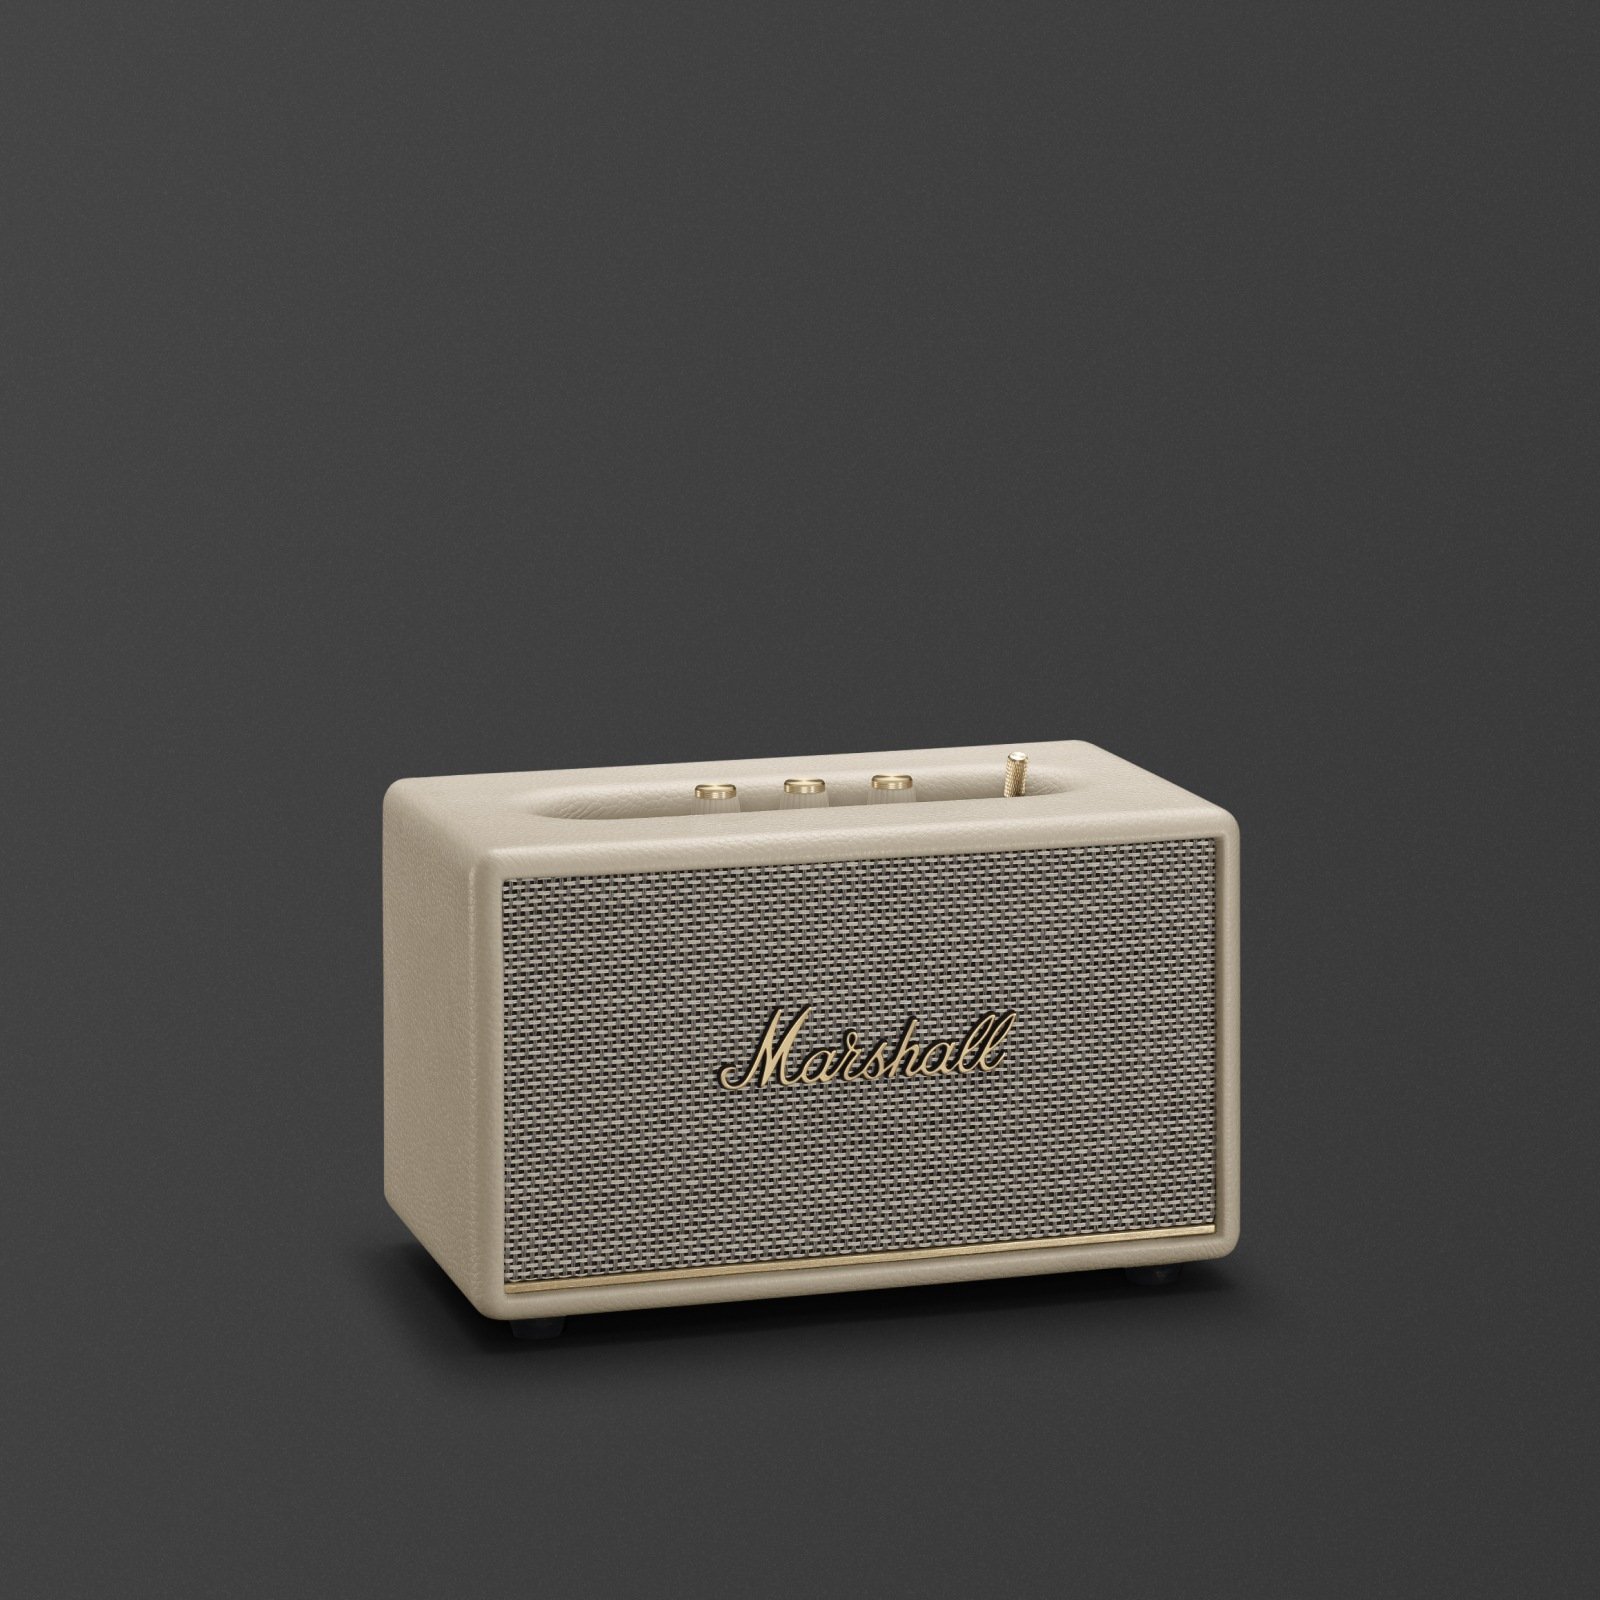 ACTON III Cream Marshall bluetooth speaker.